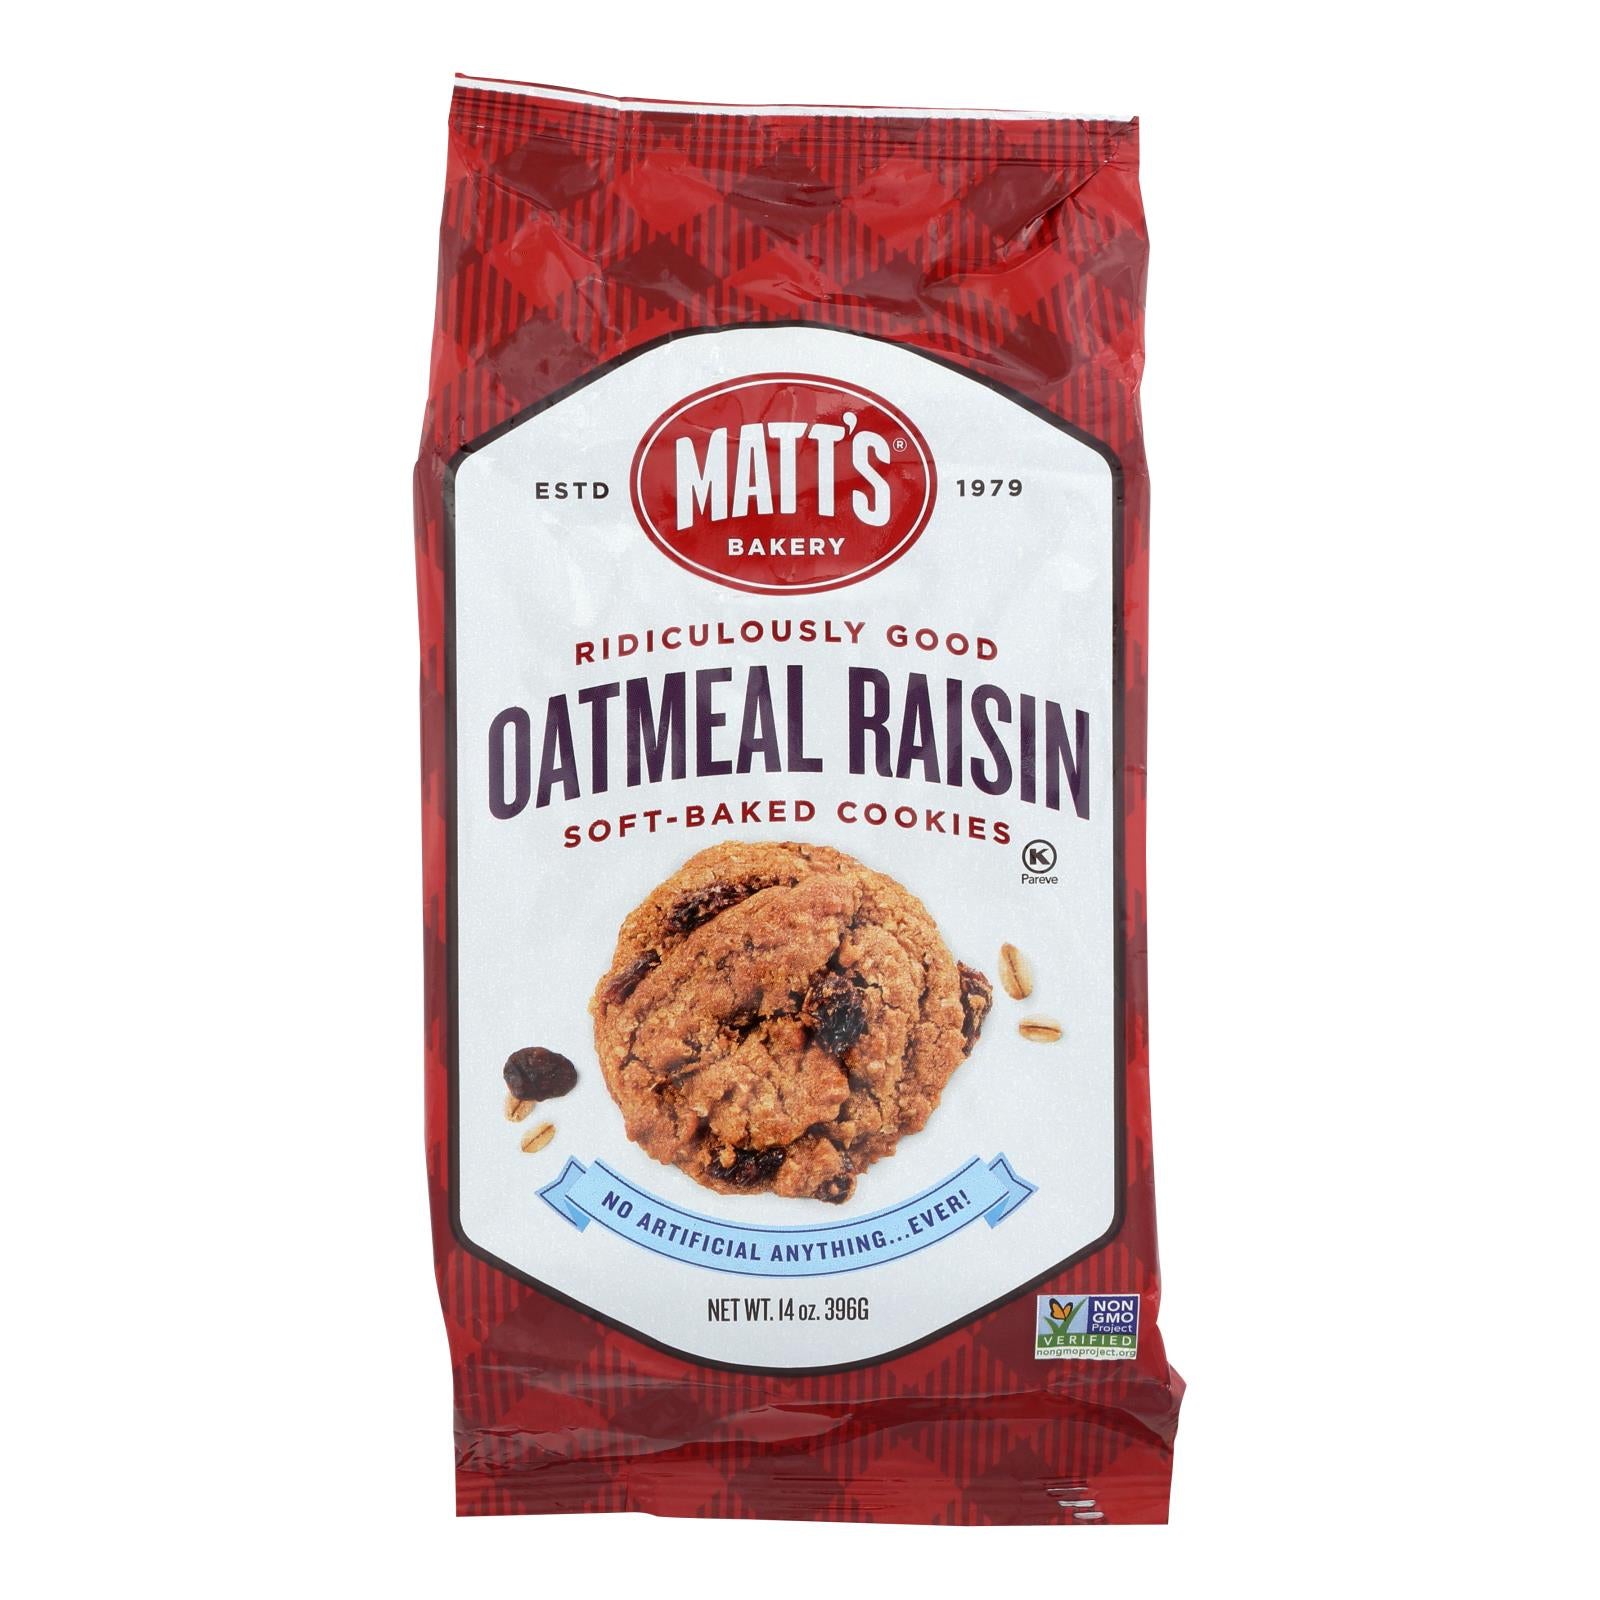 Biscuits de Matt, Biscuits à la farine d'avoine et aux raisins secs de la boulangerie Matt's - caisse de 6 - 14 OZ (paquet de 6)